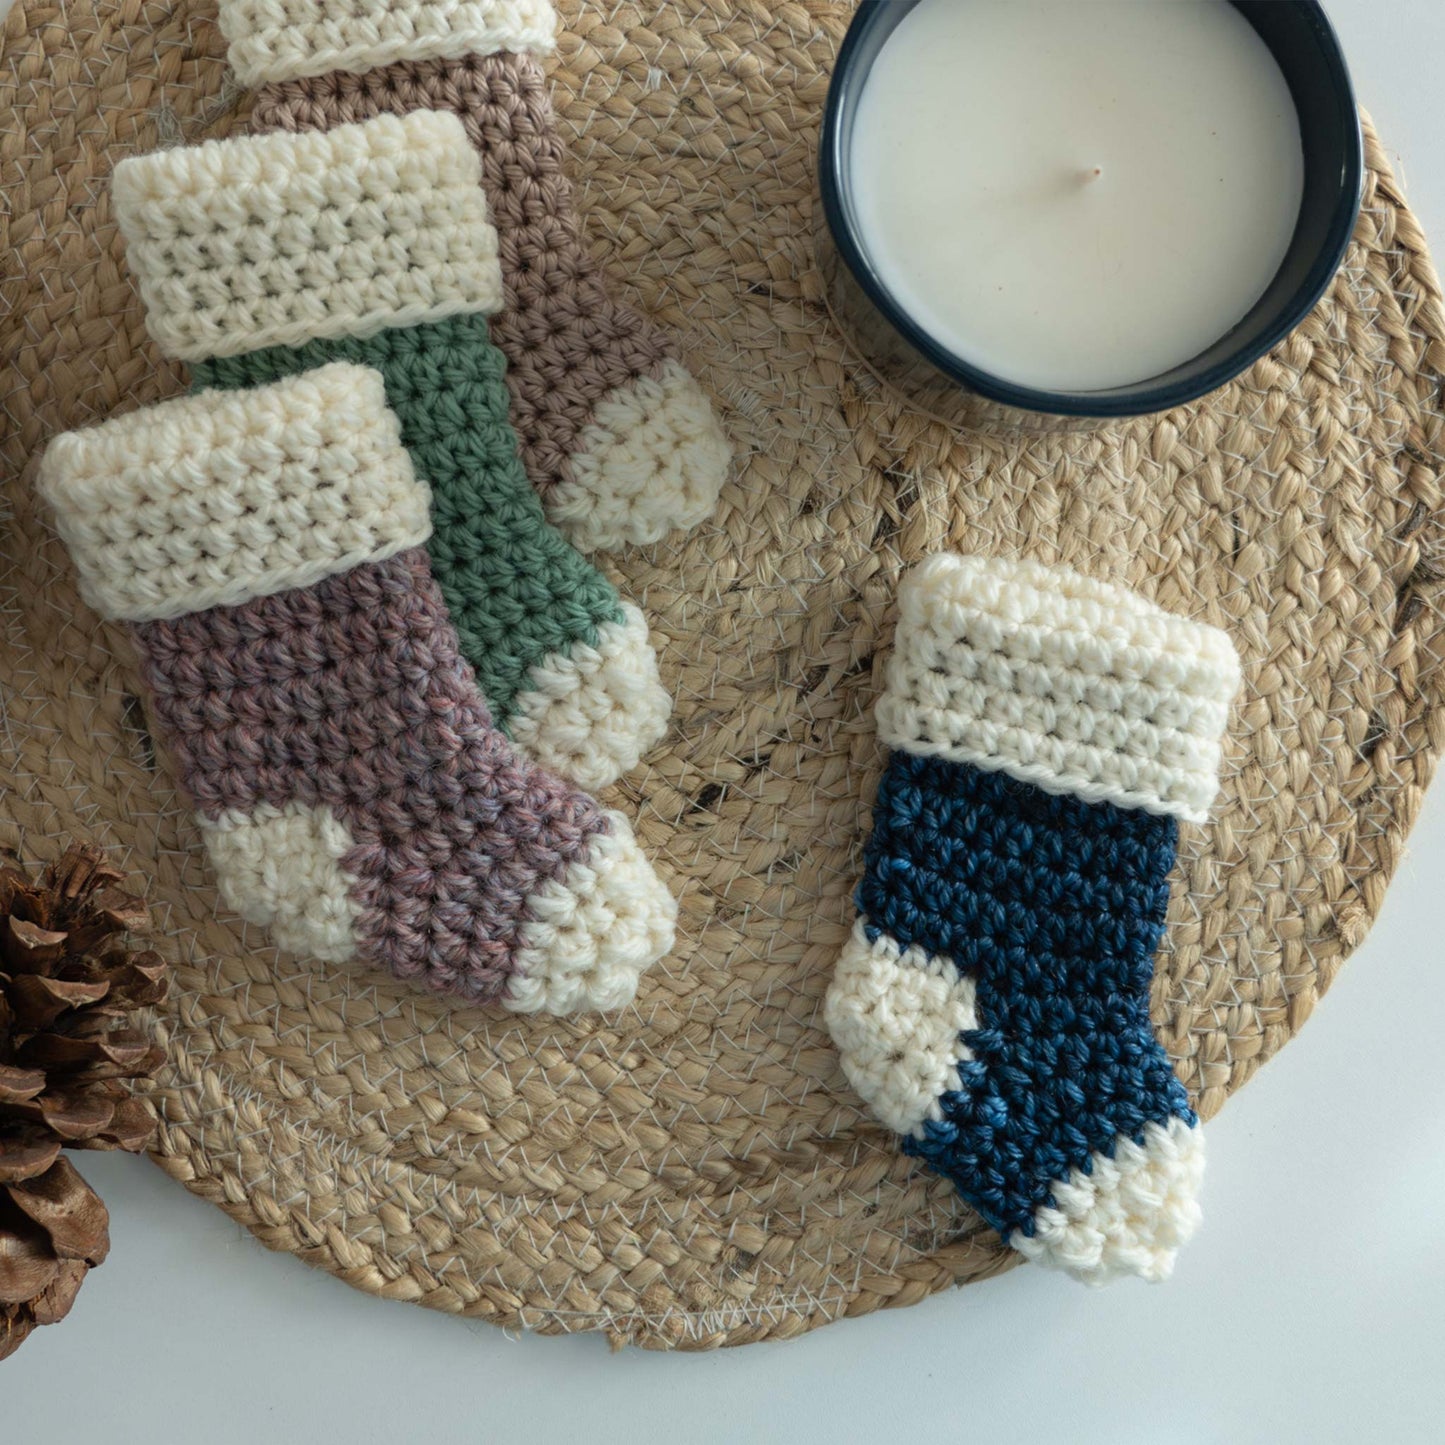 Crochet Mini Stockings PDF